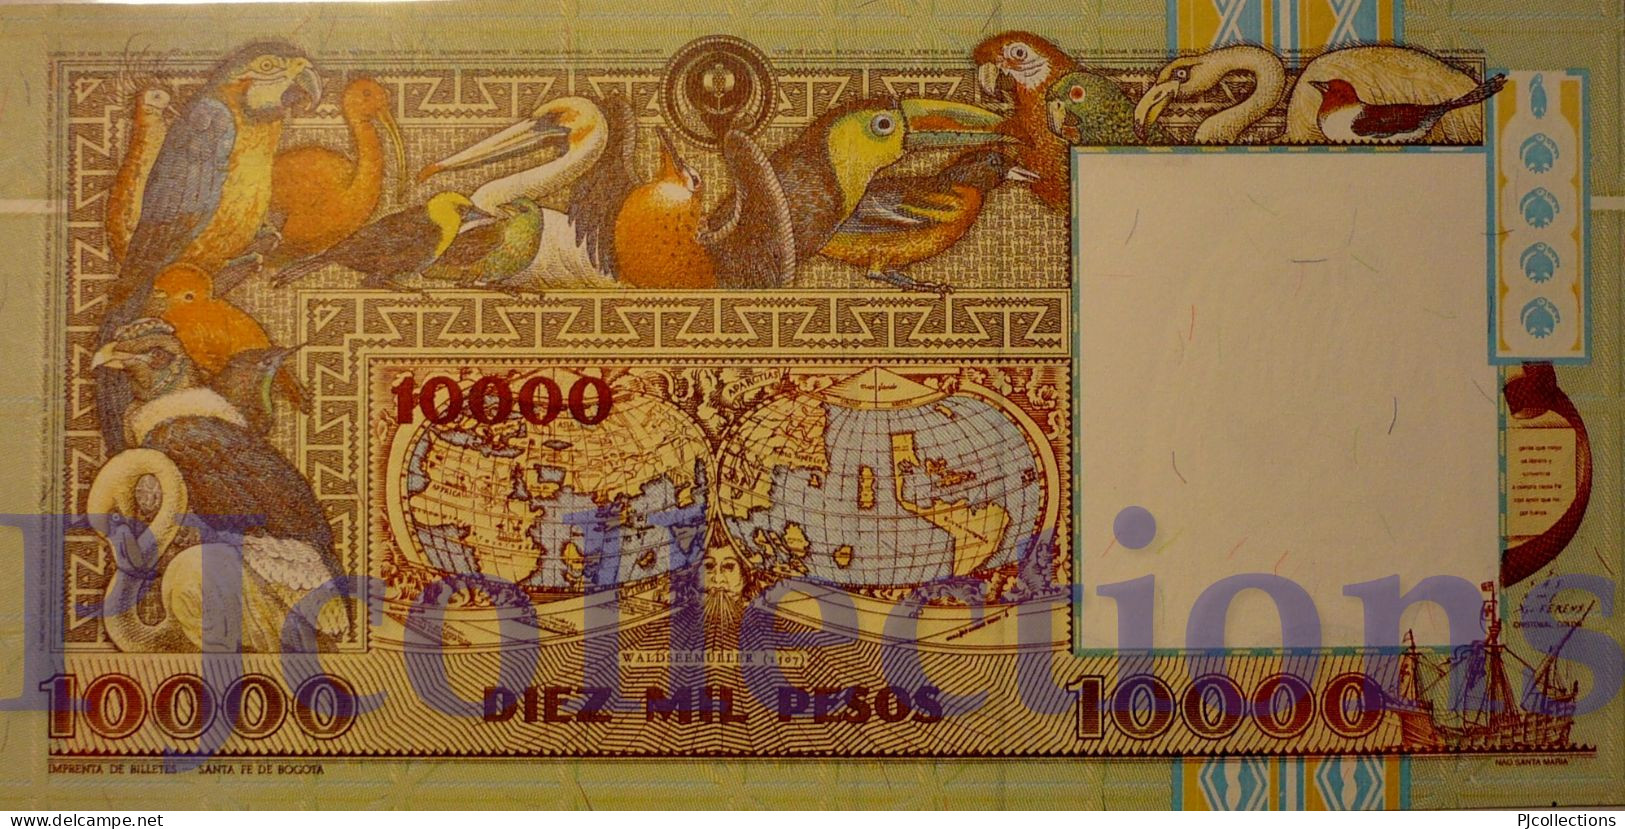 COLOMBIA 10000 PESOS ORO 1994 PICK 437A UNC - Colombia